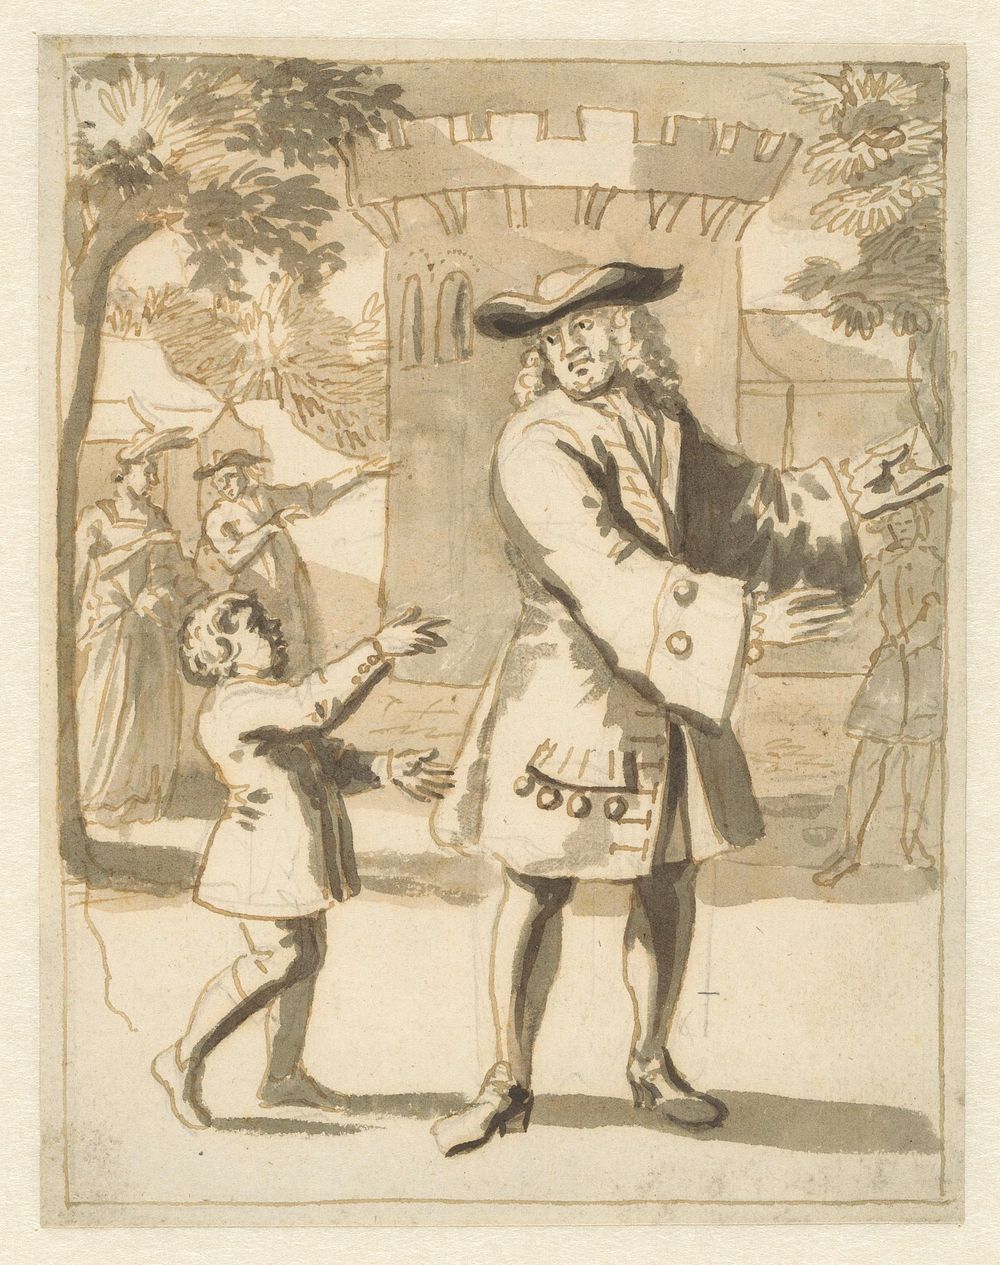 De brieven besteller (1675 - 1737) by Pieter van den Berge